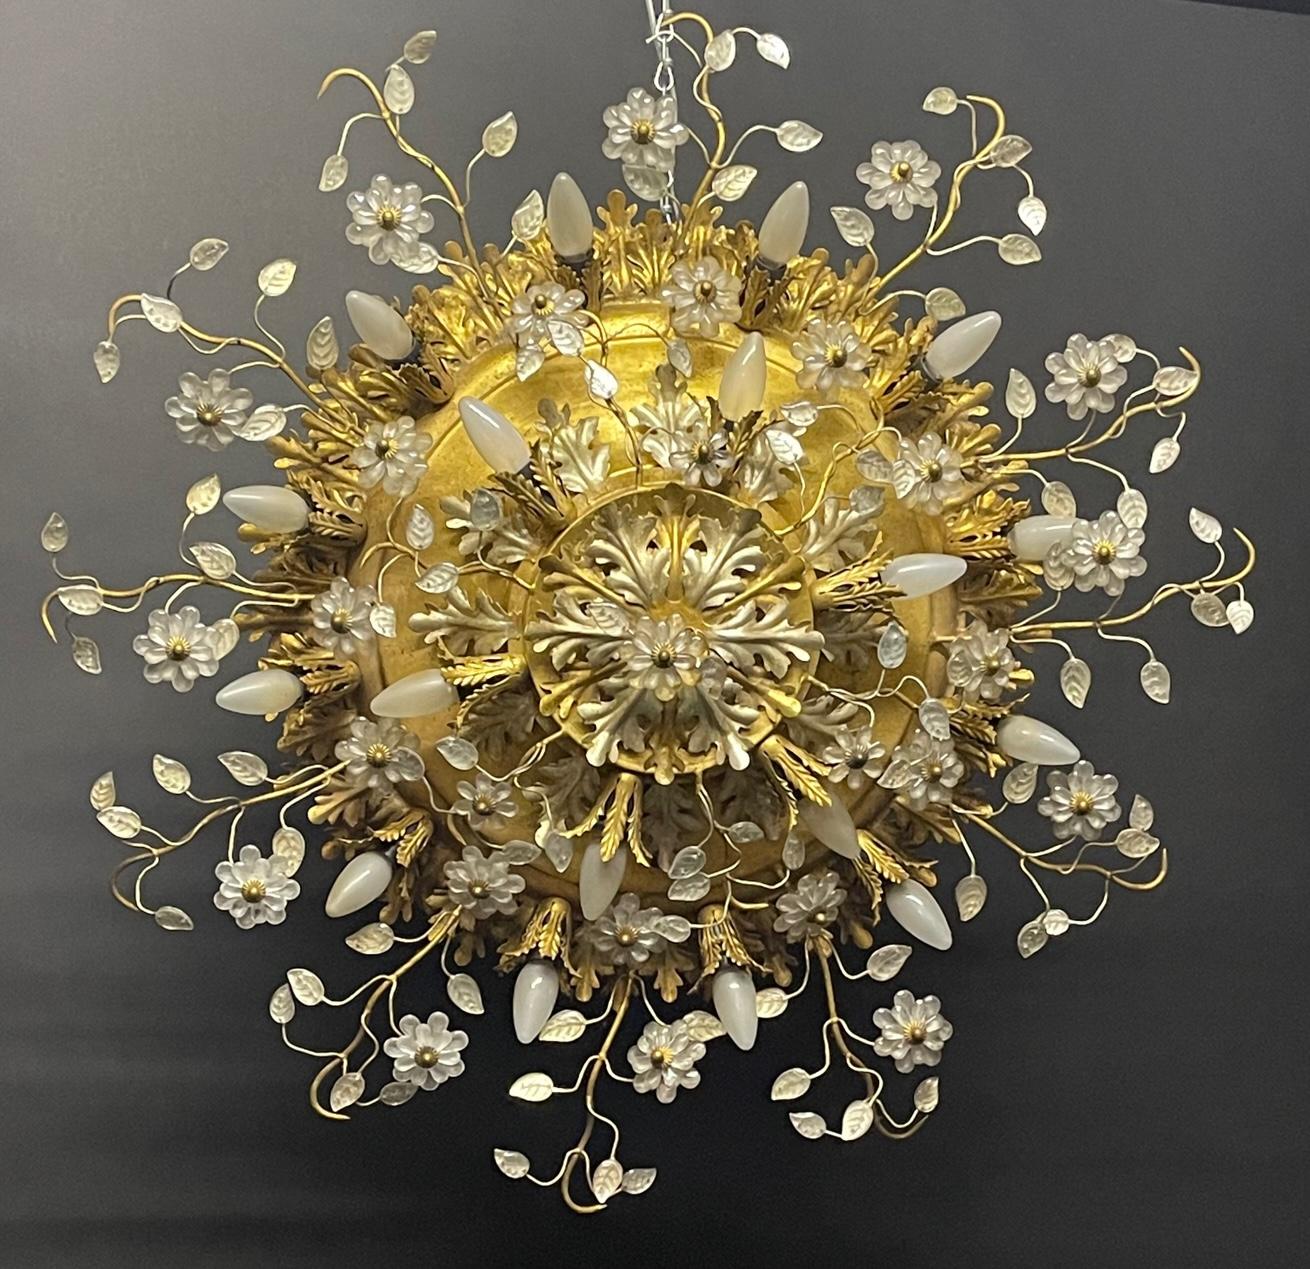 Énorme luminaire à dix-huit lumières en verre fleuri et dorure à l'or fin, attribué à la Maison Baguès, France, vers les années 1950.
Douille : 18 x e14 pour ampoules à vis standard.
Diamètre : 39.37 pouces.